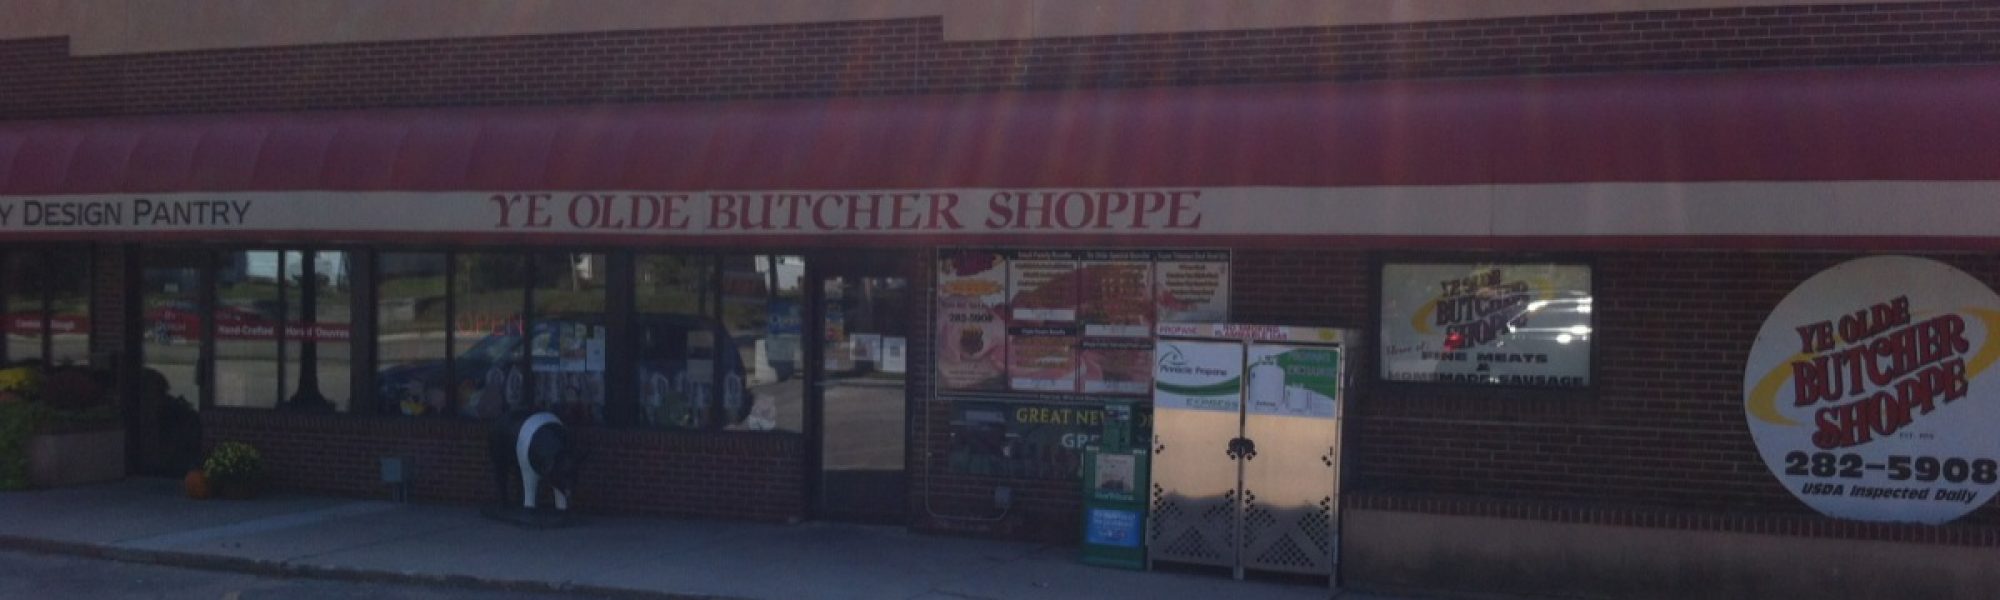 ye olde butcher shoppe